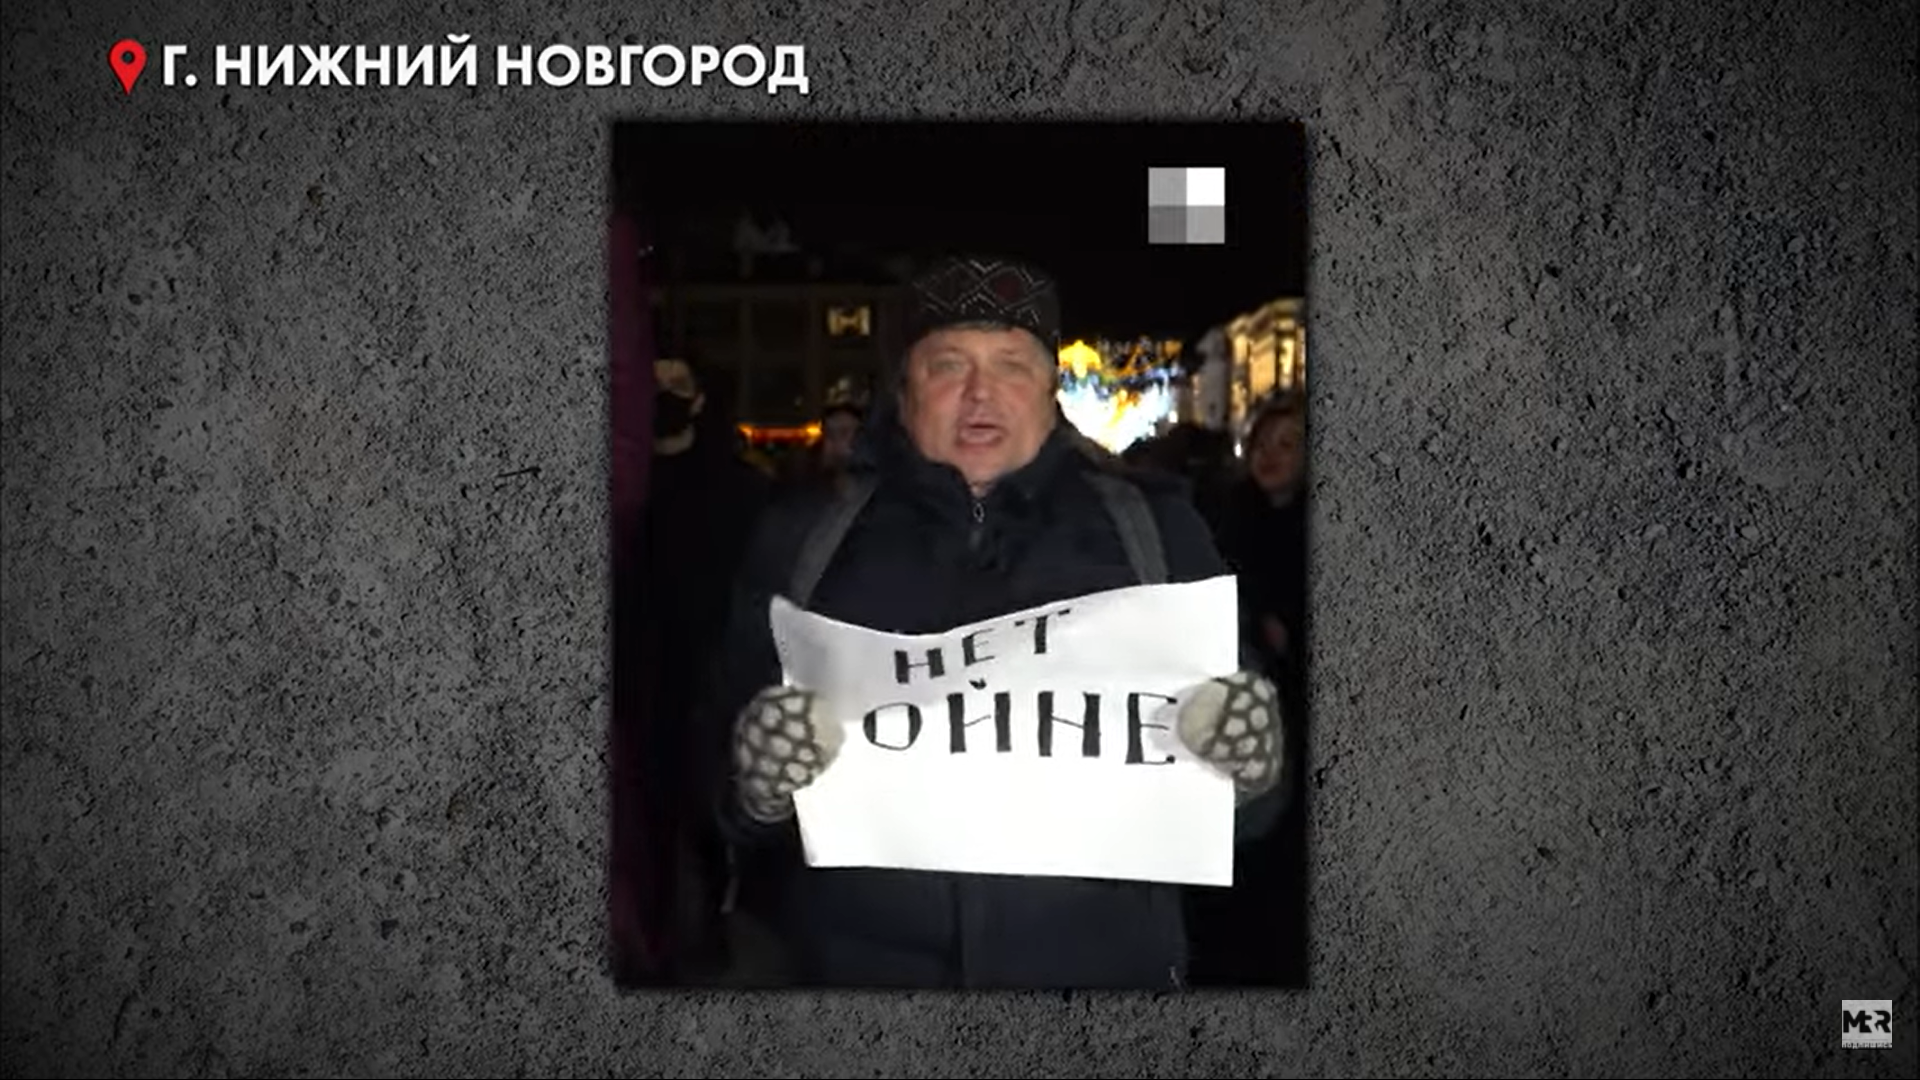 Видео дня: о войне и мире из Нижнего Новгорода